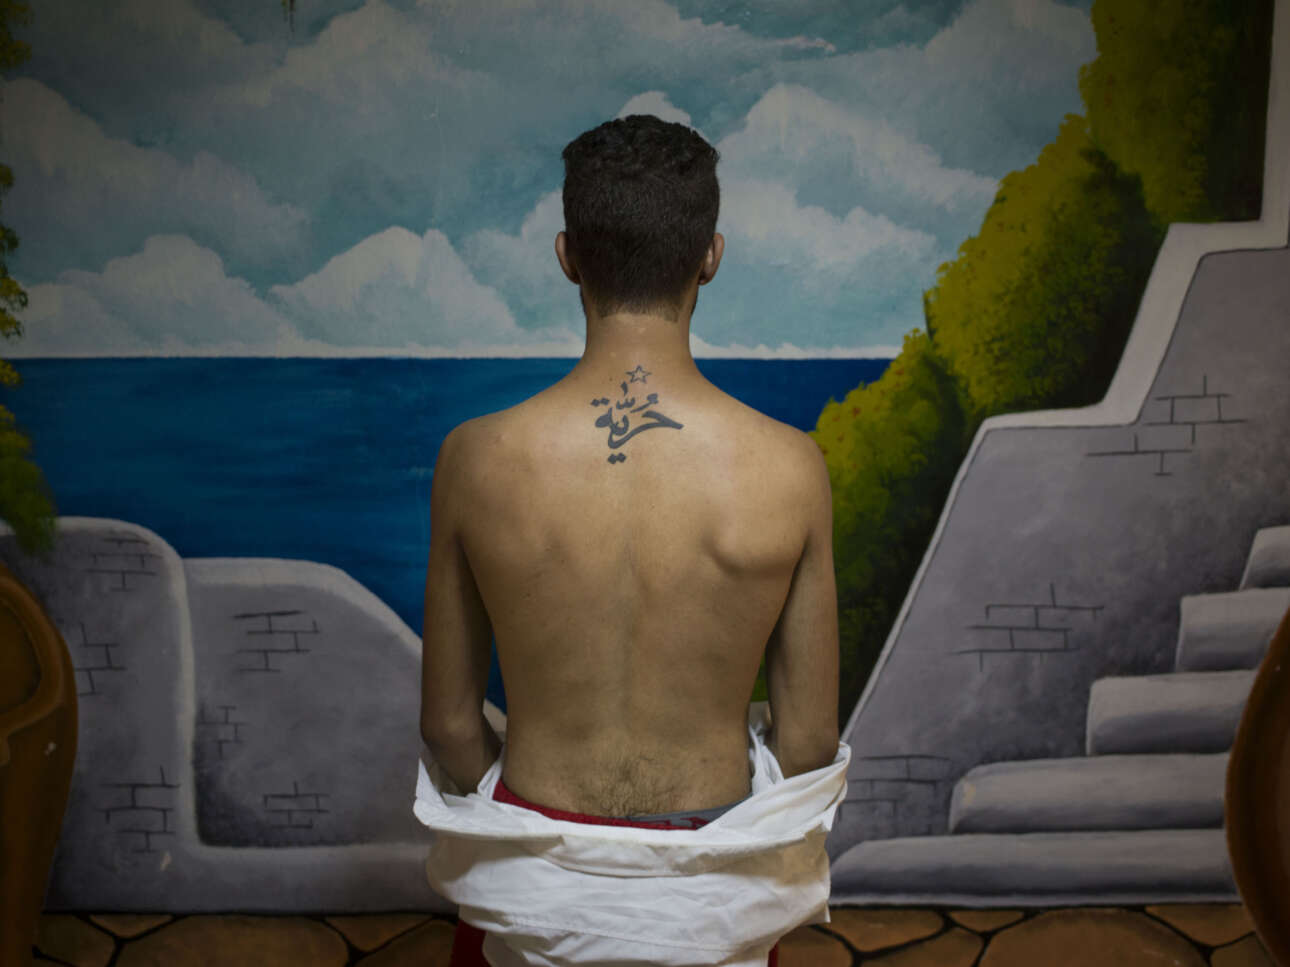 Ενας νεαρός ηθοποιός που συνεργάζεται με την ομάδα Fani Raghman Ani, μια οργάνωση που υπερασπίζεται τα ανθρώπινα δικαιώματα στην Τυνησία, δείχνει το τατουάζ στην πλάτη του που γράφει «ελευθερία» στα αραβικά